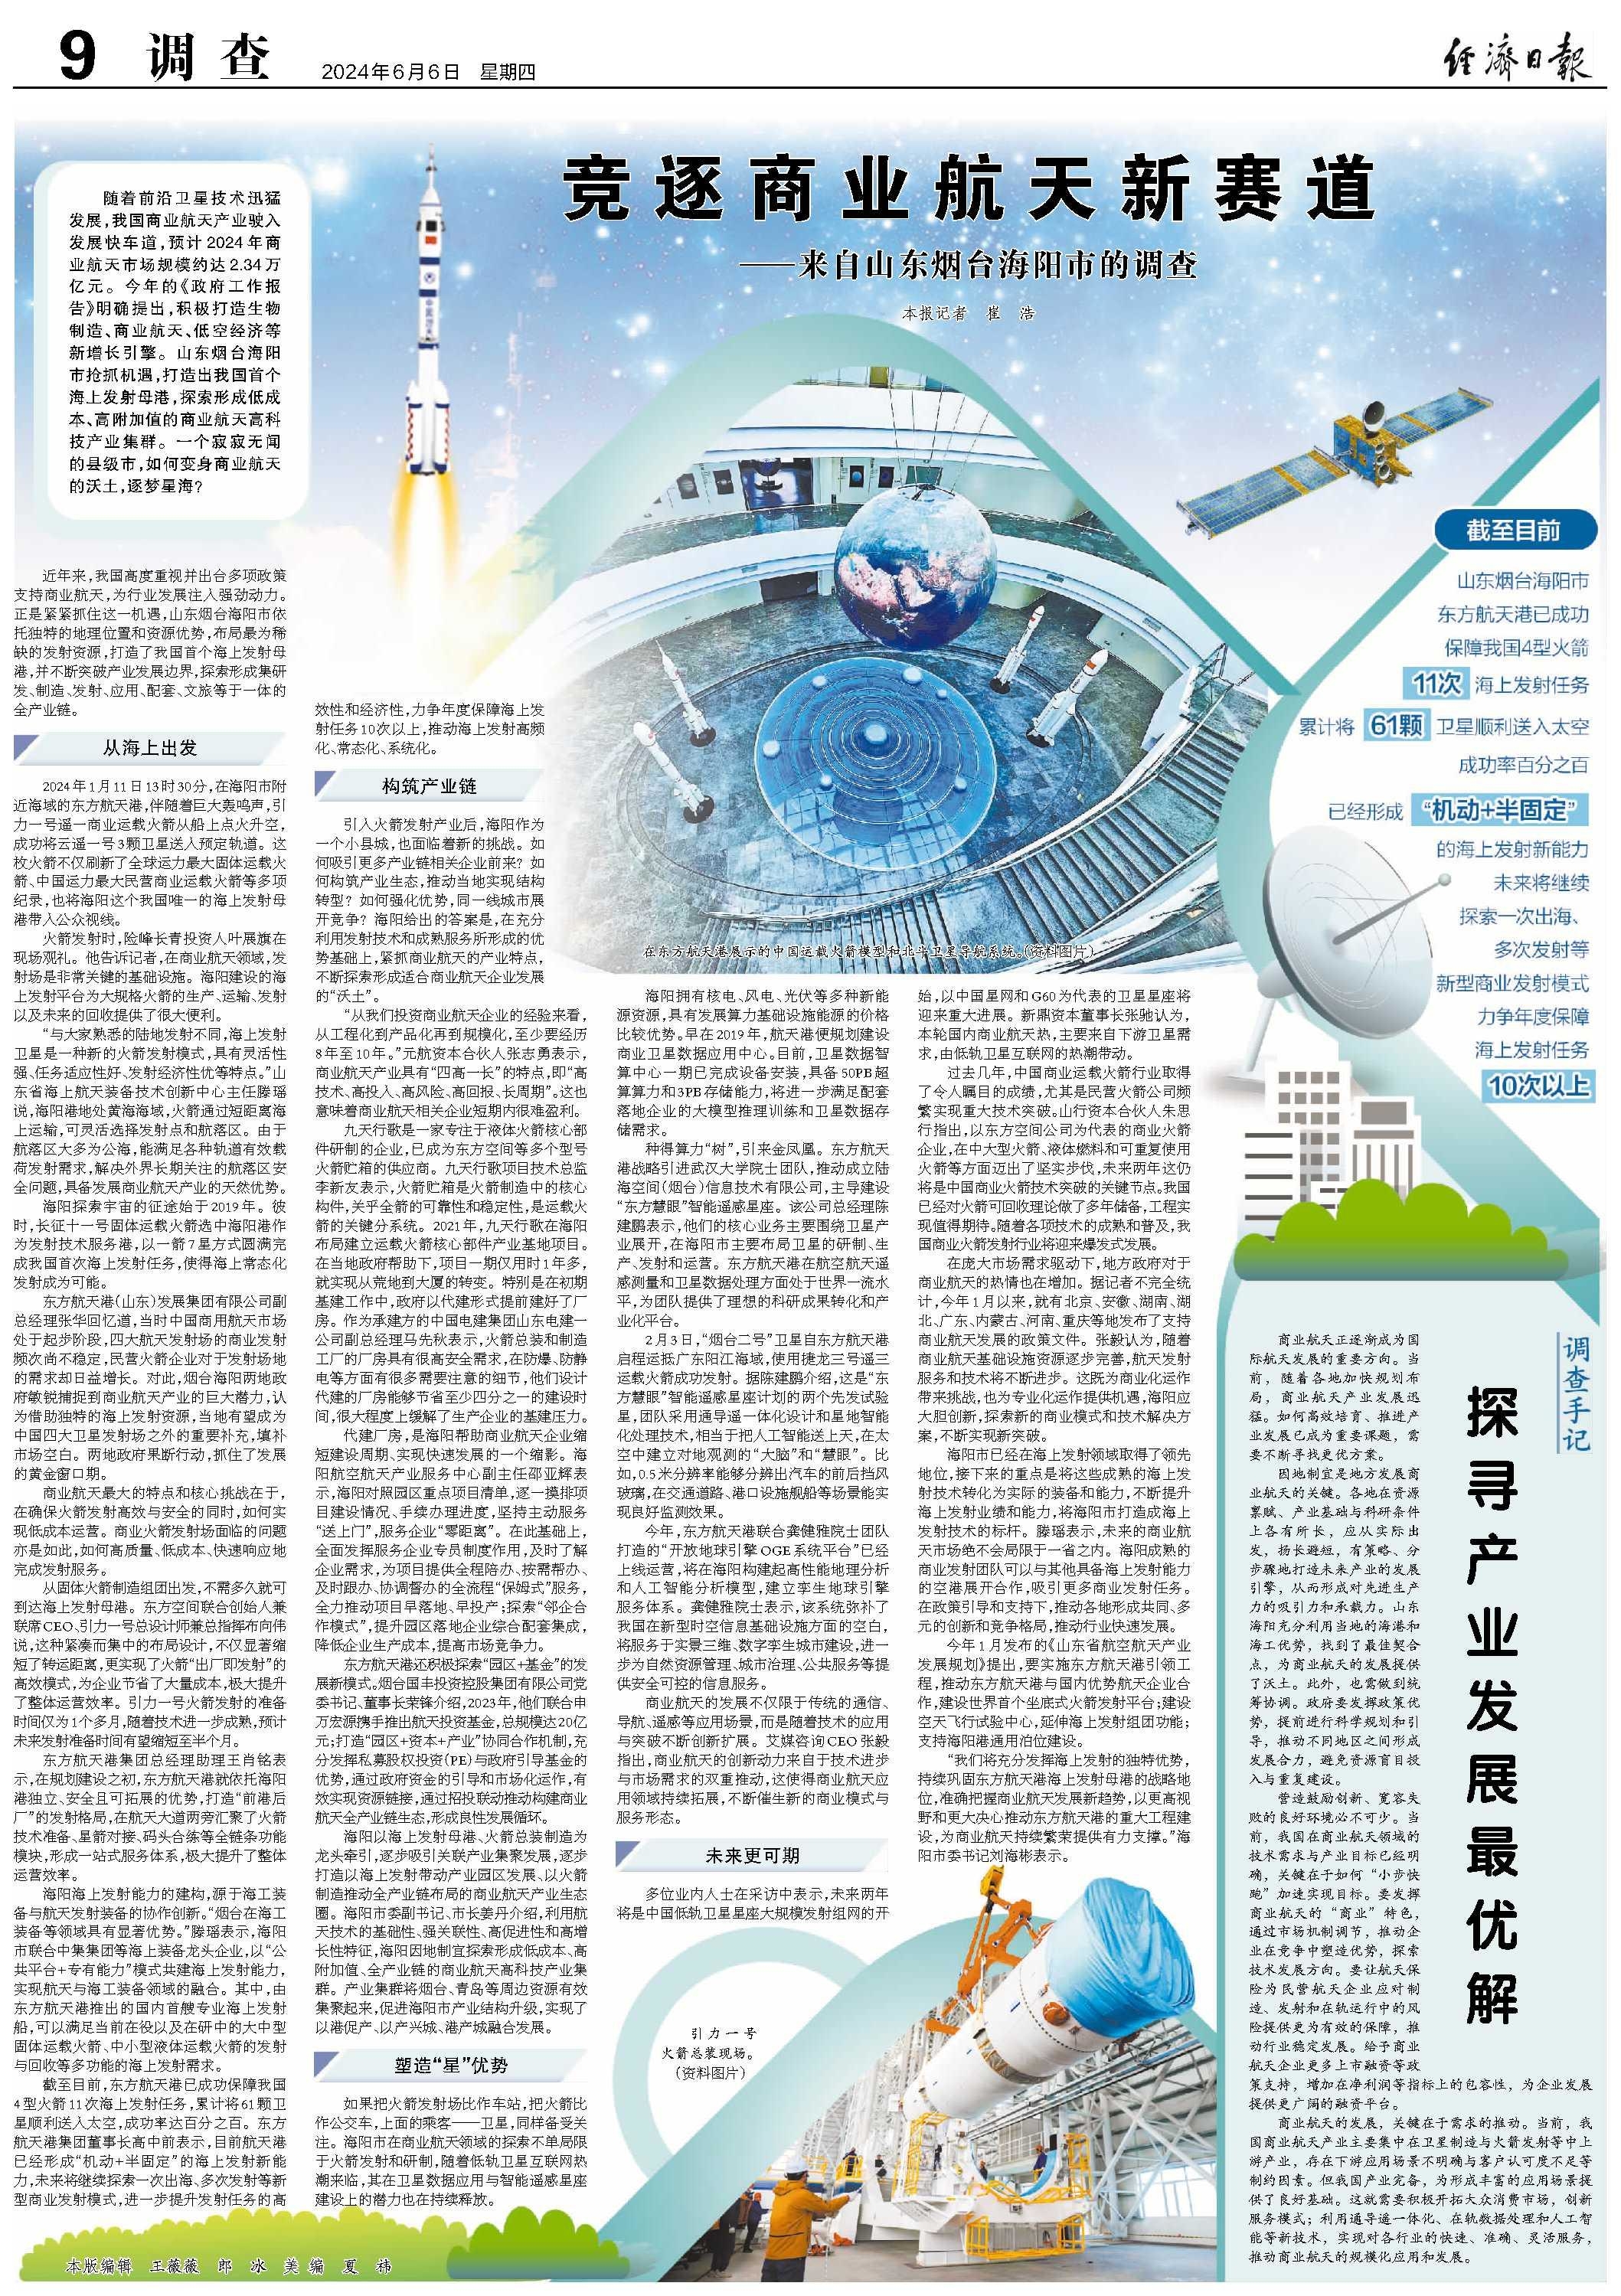 竞逐商业航天新赛道——来自山东烟台海阳市的调查